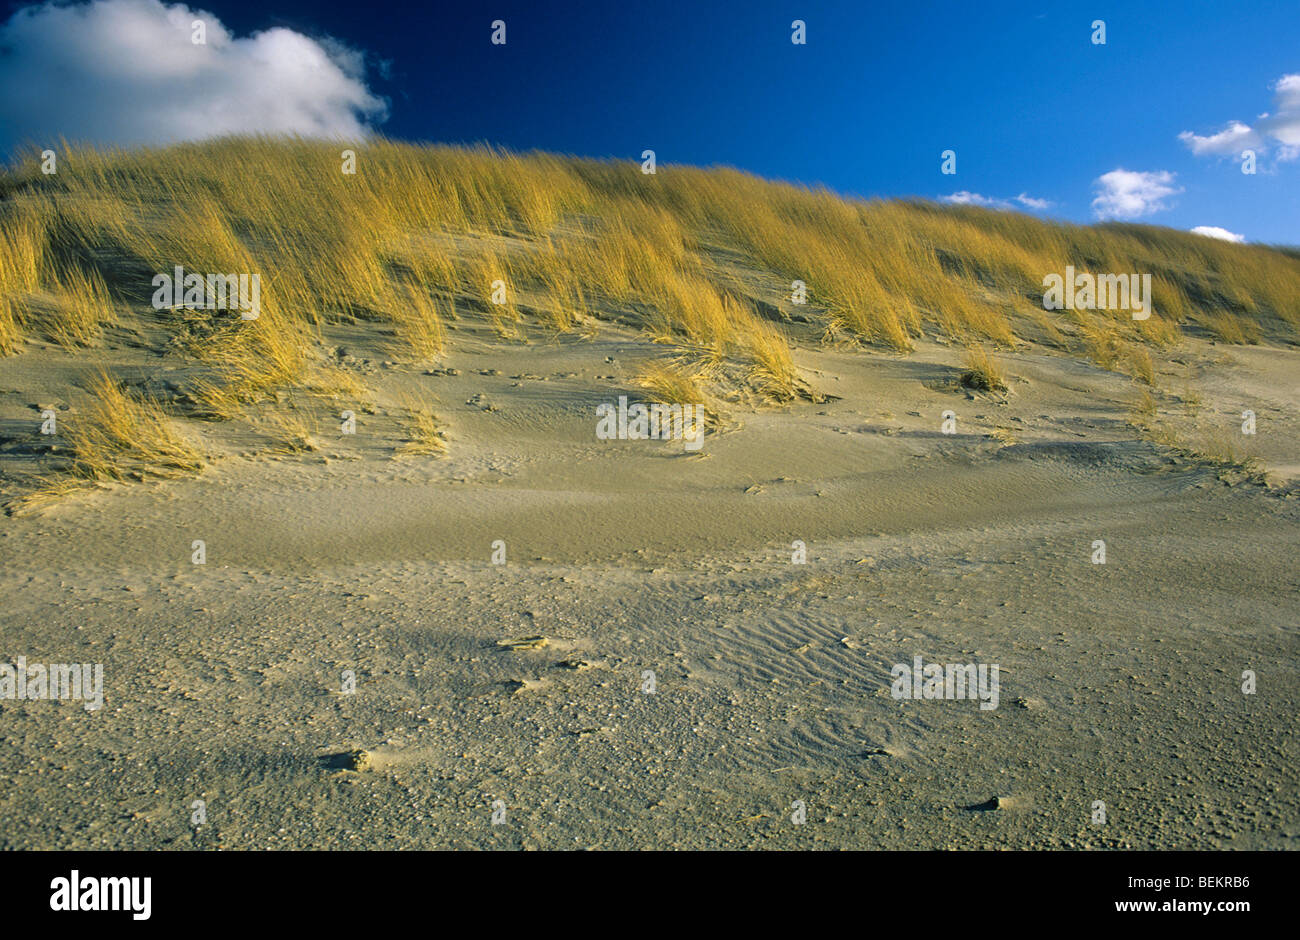 Marram grass (Ammophila arenaria) in the dunes, Zwin, Retranchement, Netherlands Stock Photo